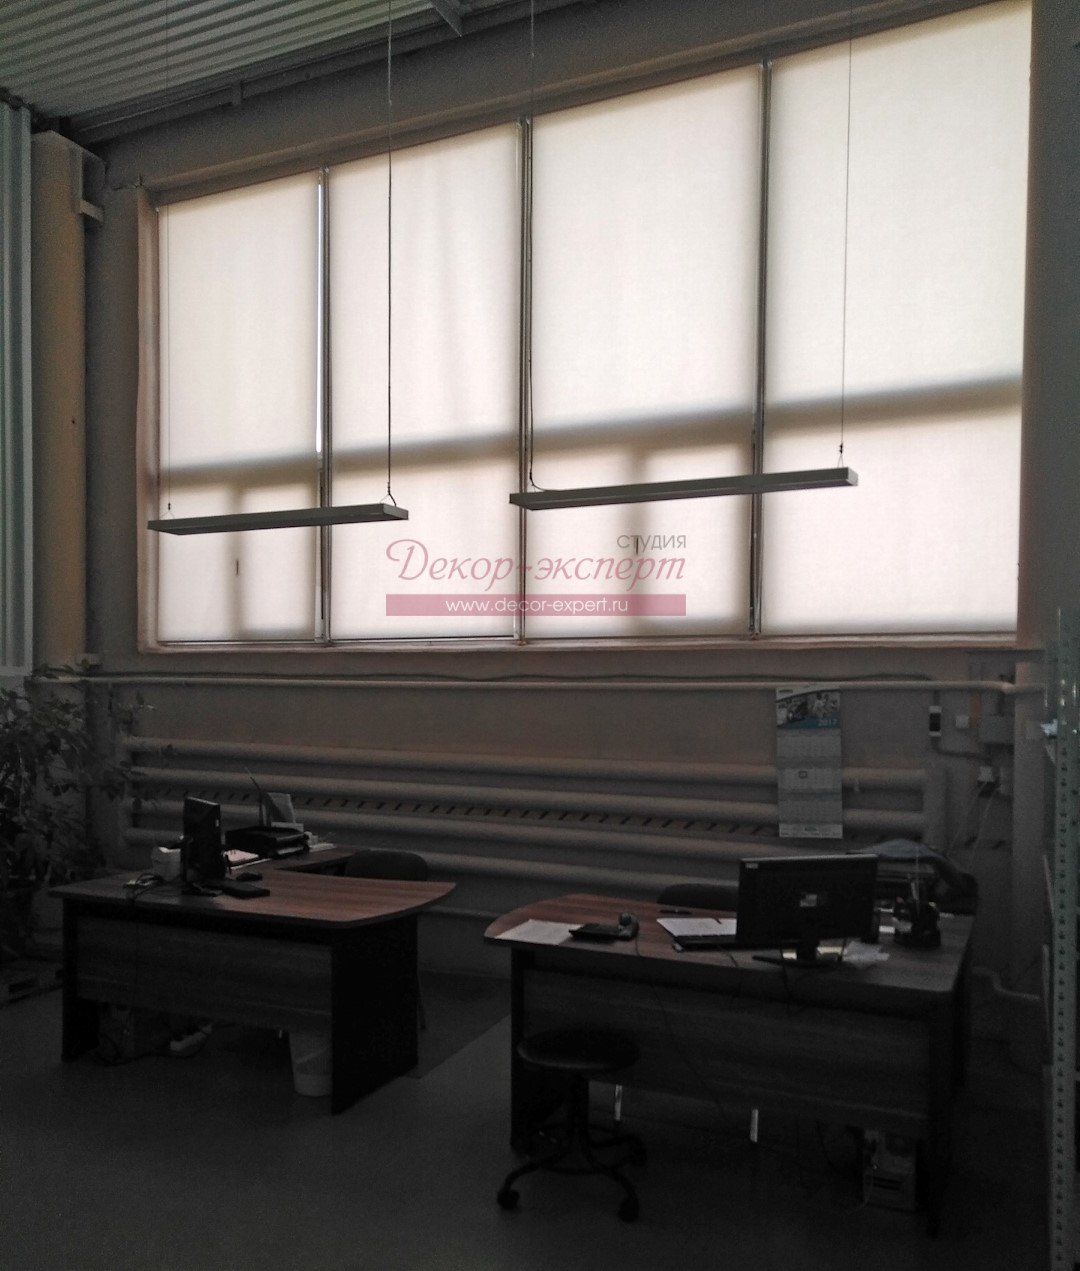 Четыре рулонные шторы MGS в производственном помещении.